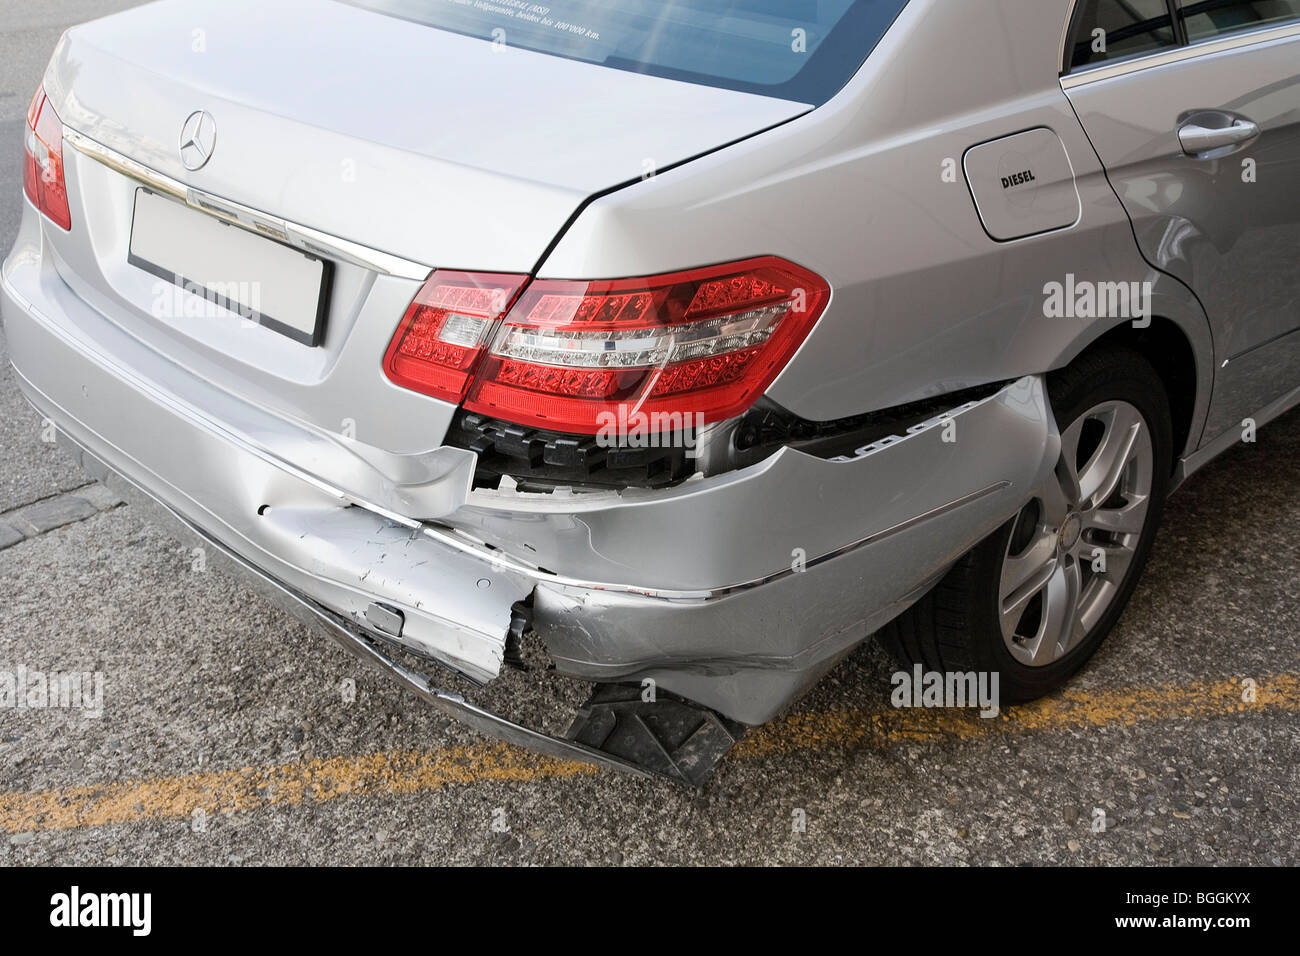 Mercedes, Ergebnisse der beschädigt ein Auffahrunfall, Querformat Stockfoto